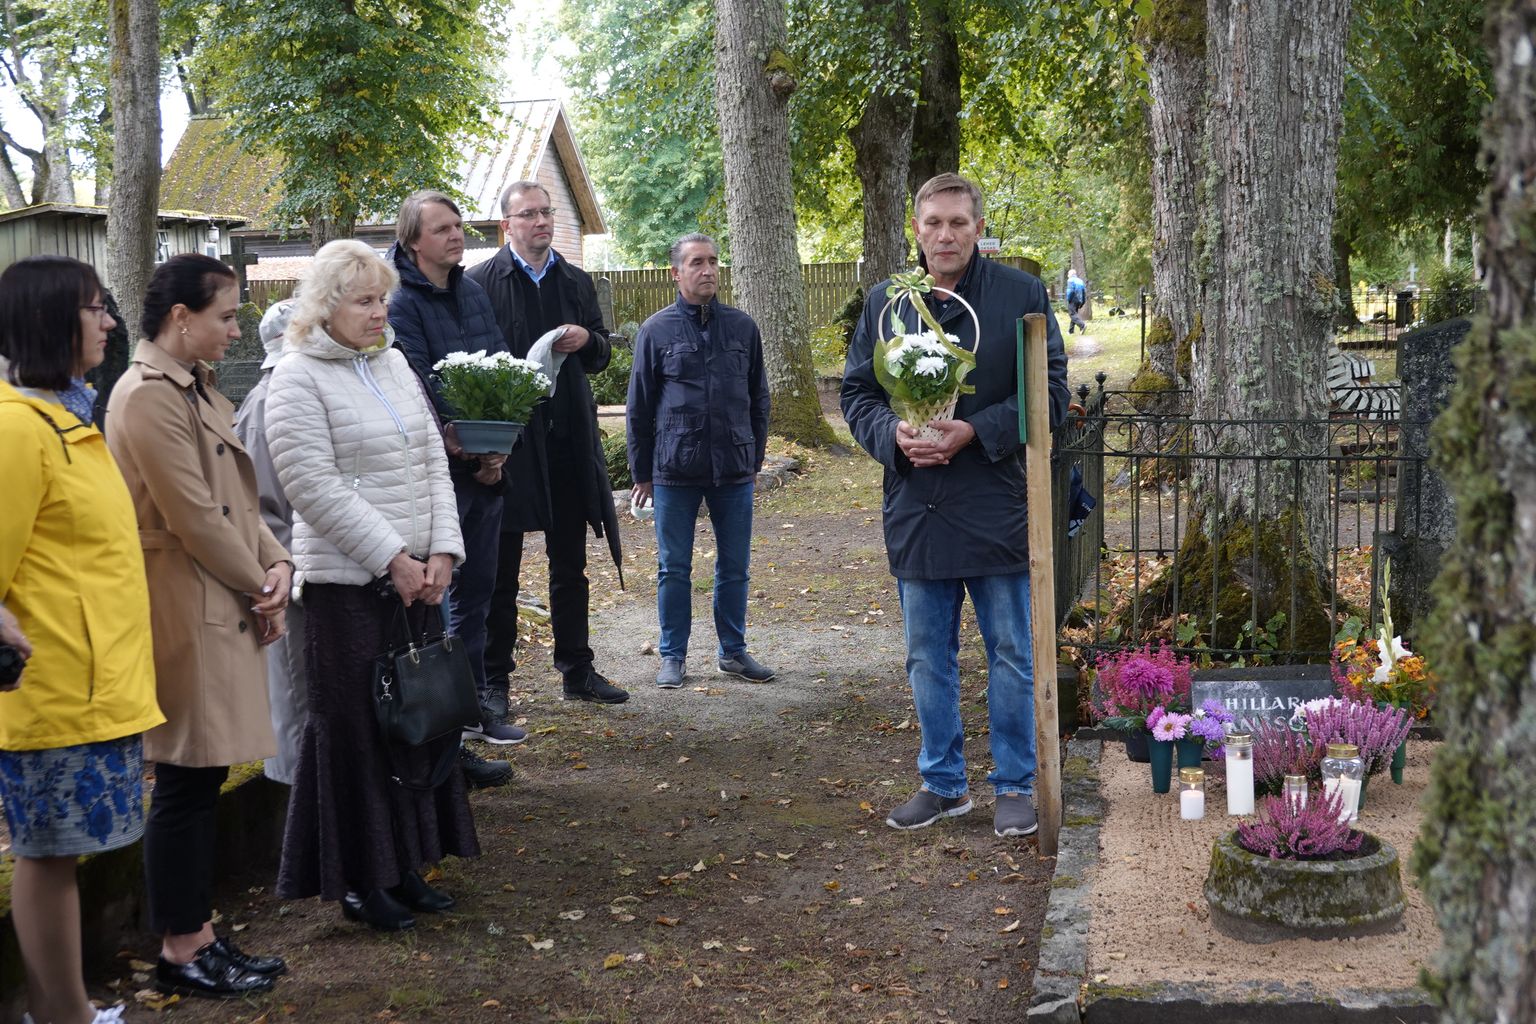 Legendaarset koolijuhti Hillar Hanssood pole unustatud ega unustatagi. Tema nimi elab edasi kooli nimes ning tema hauale tuuakse tähtsündmuste puhul alati lilli ja küünlaid.